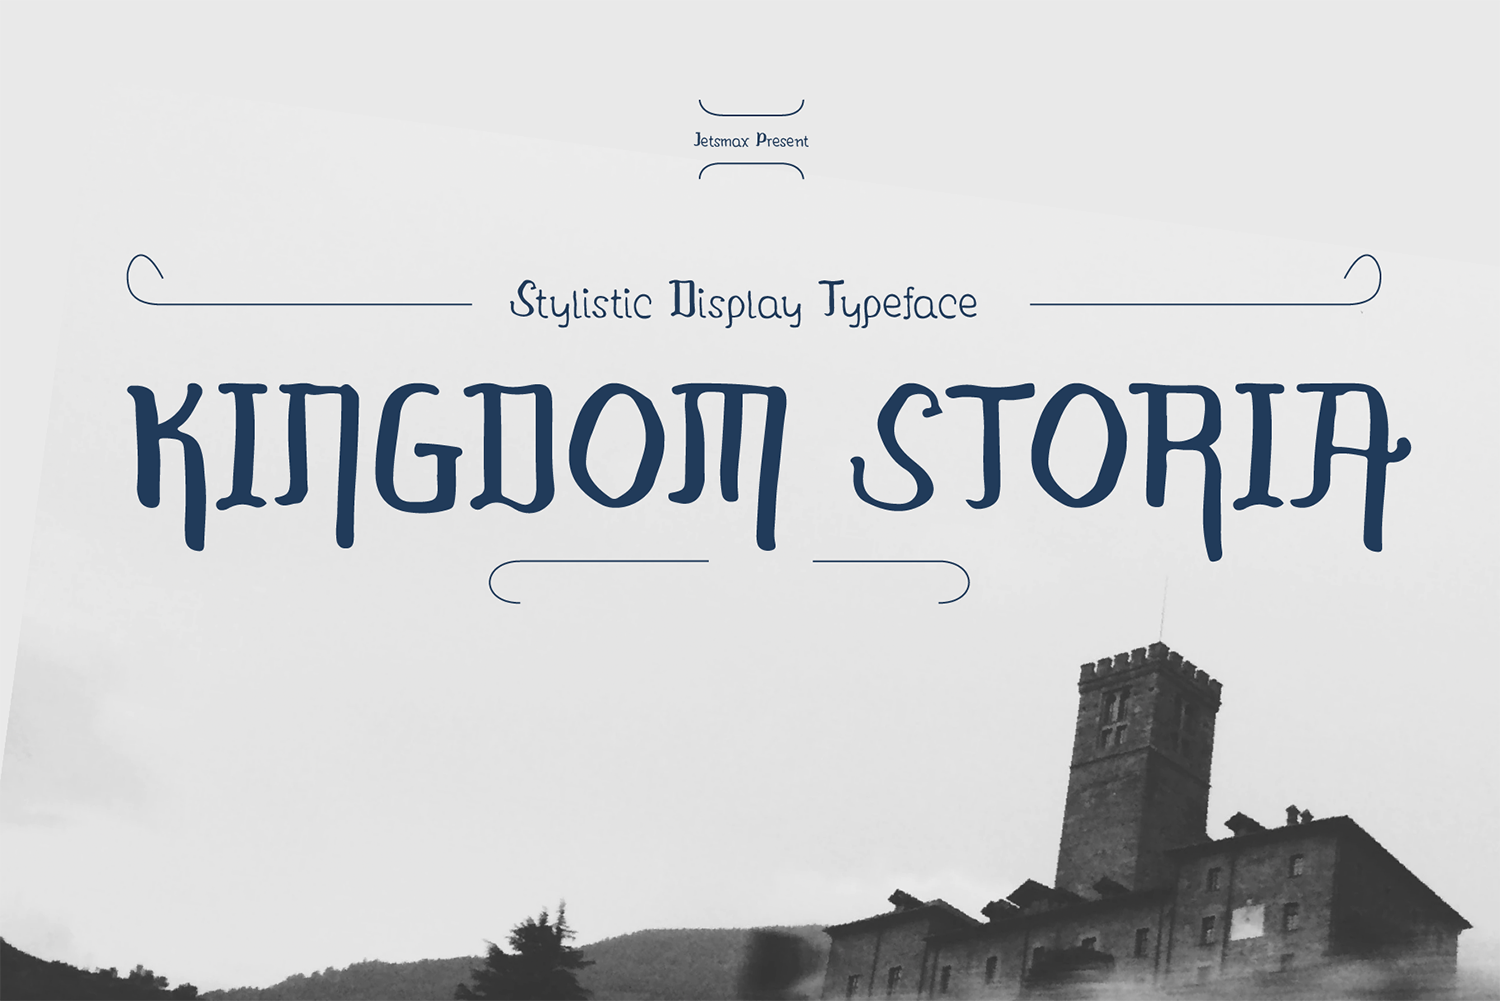 Kingdom Storia Free Font